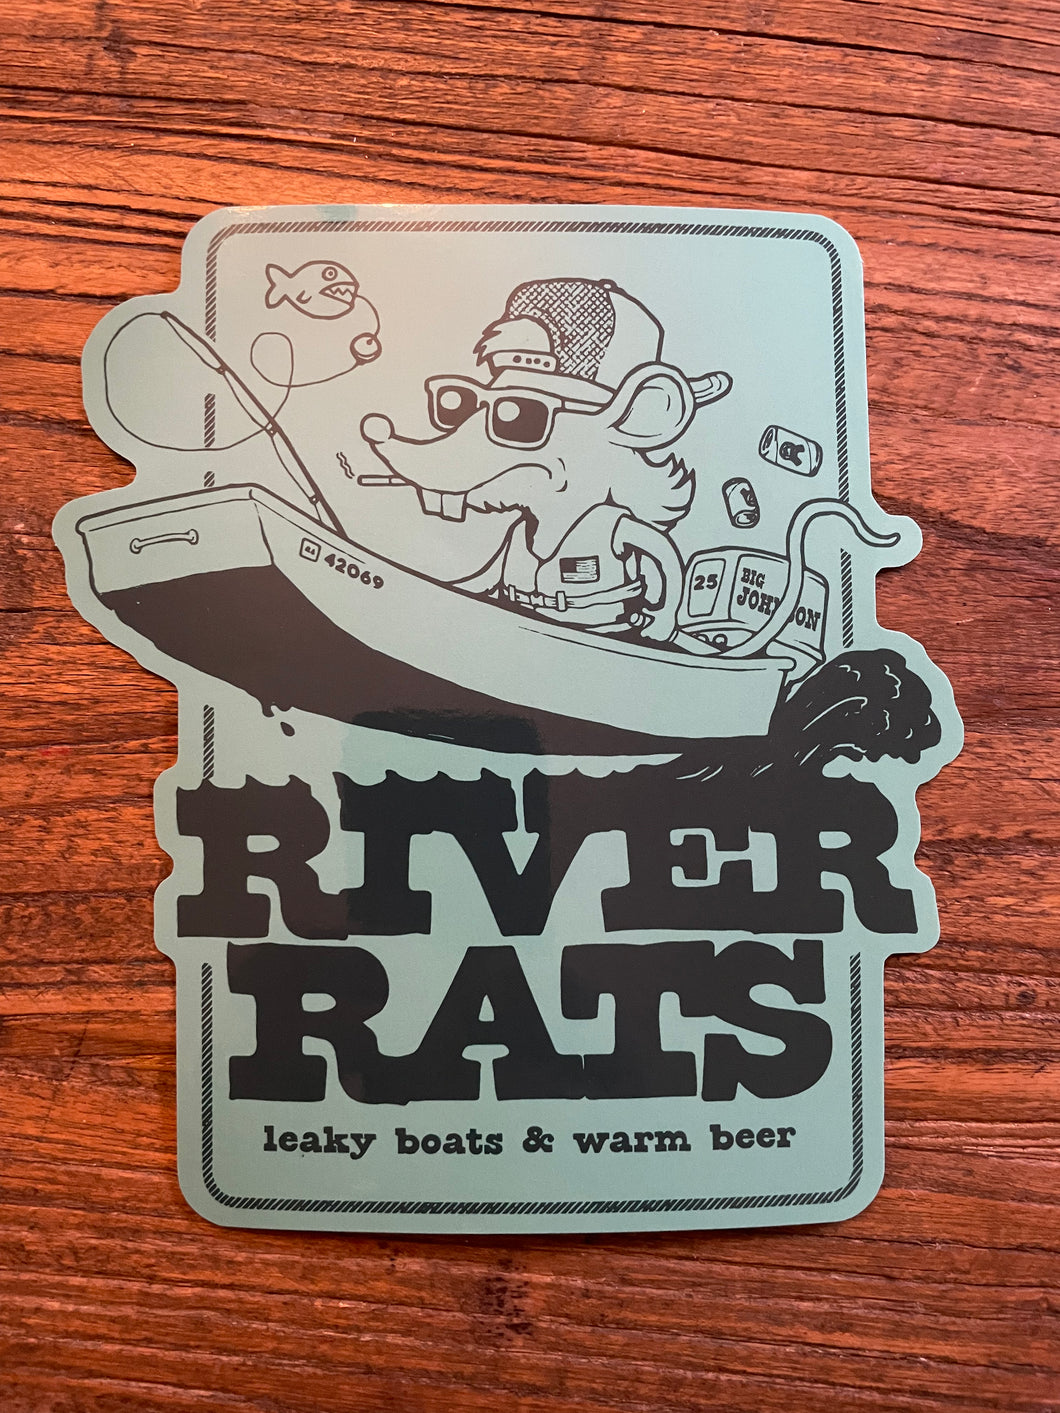 River Rats